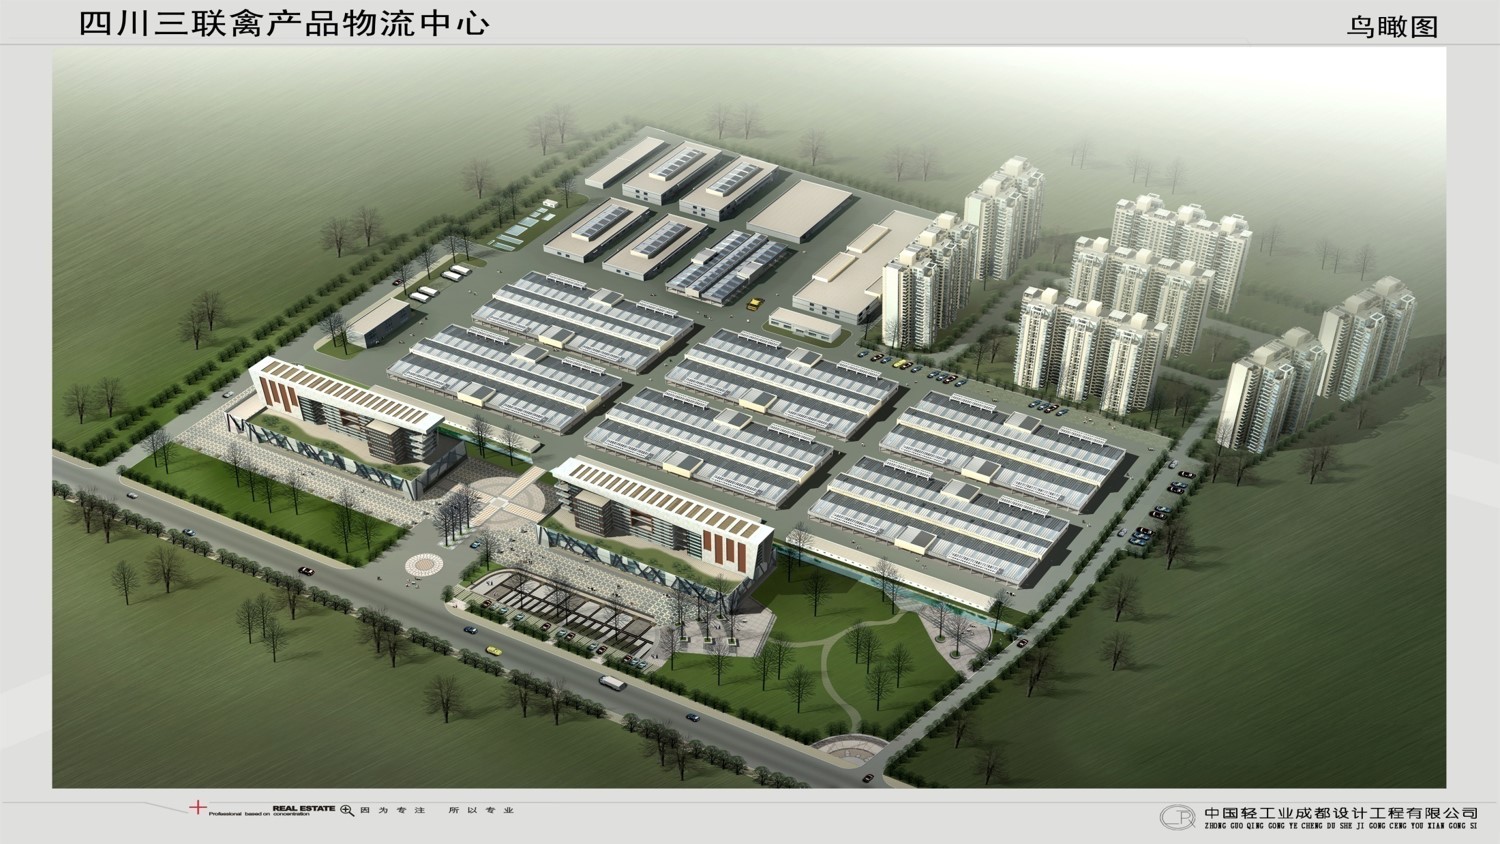 Sichuan Sanlian Poultry Products Logistics Center